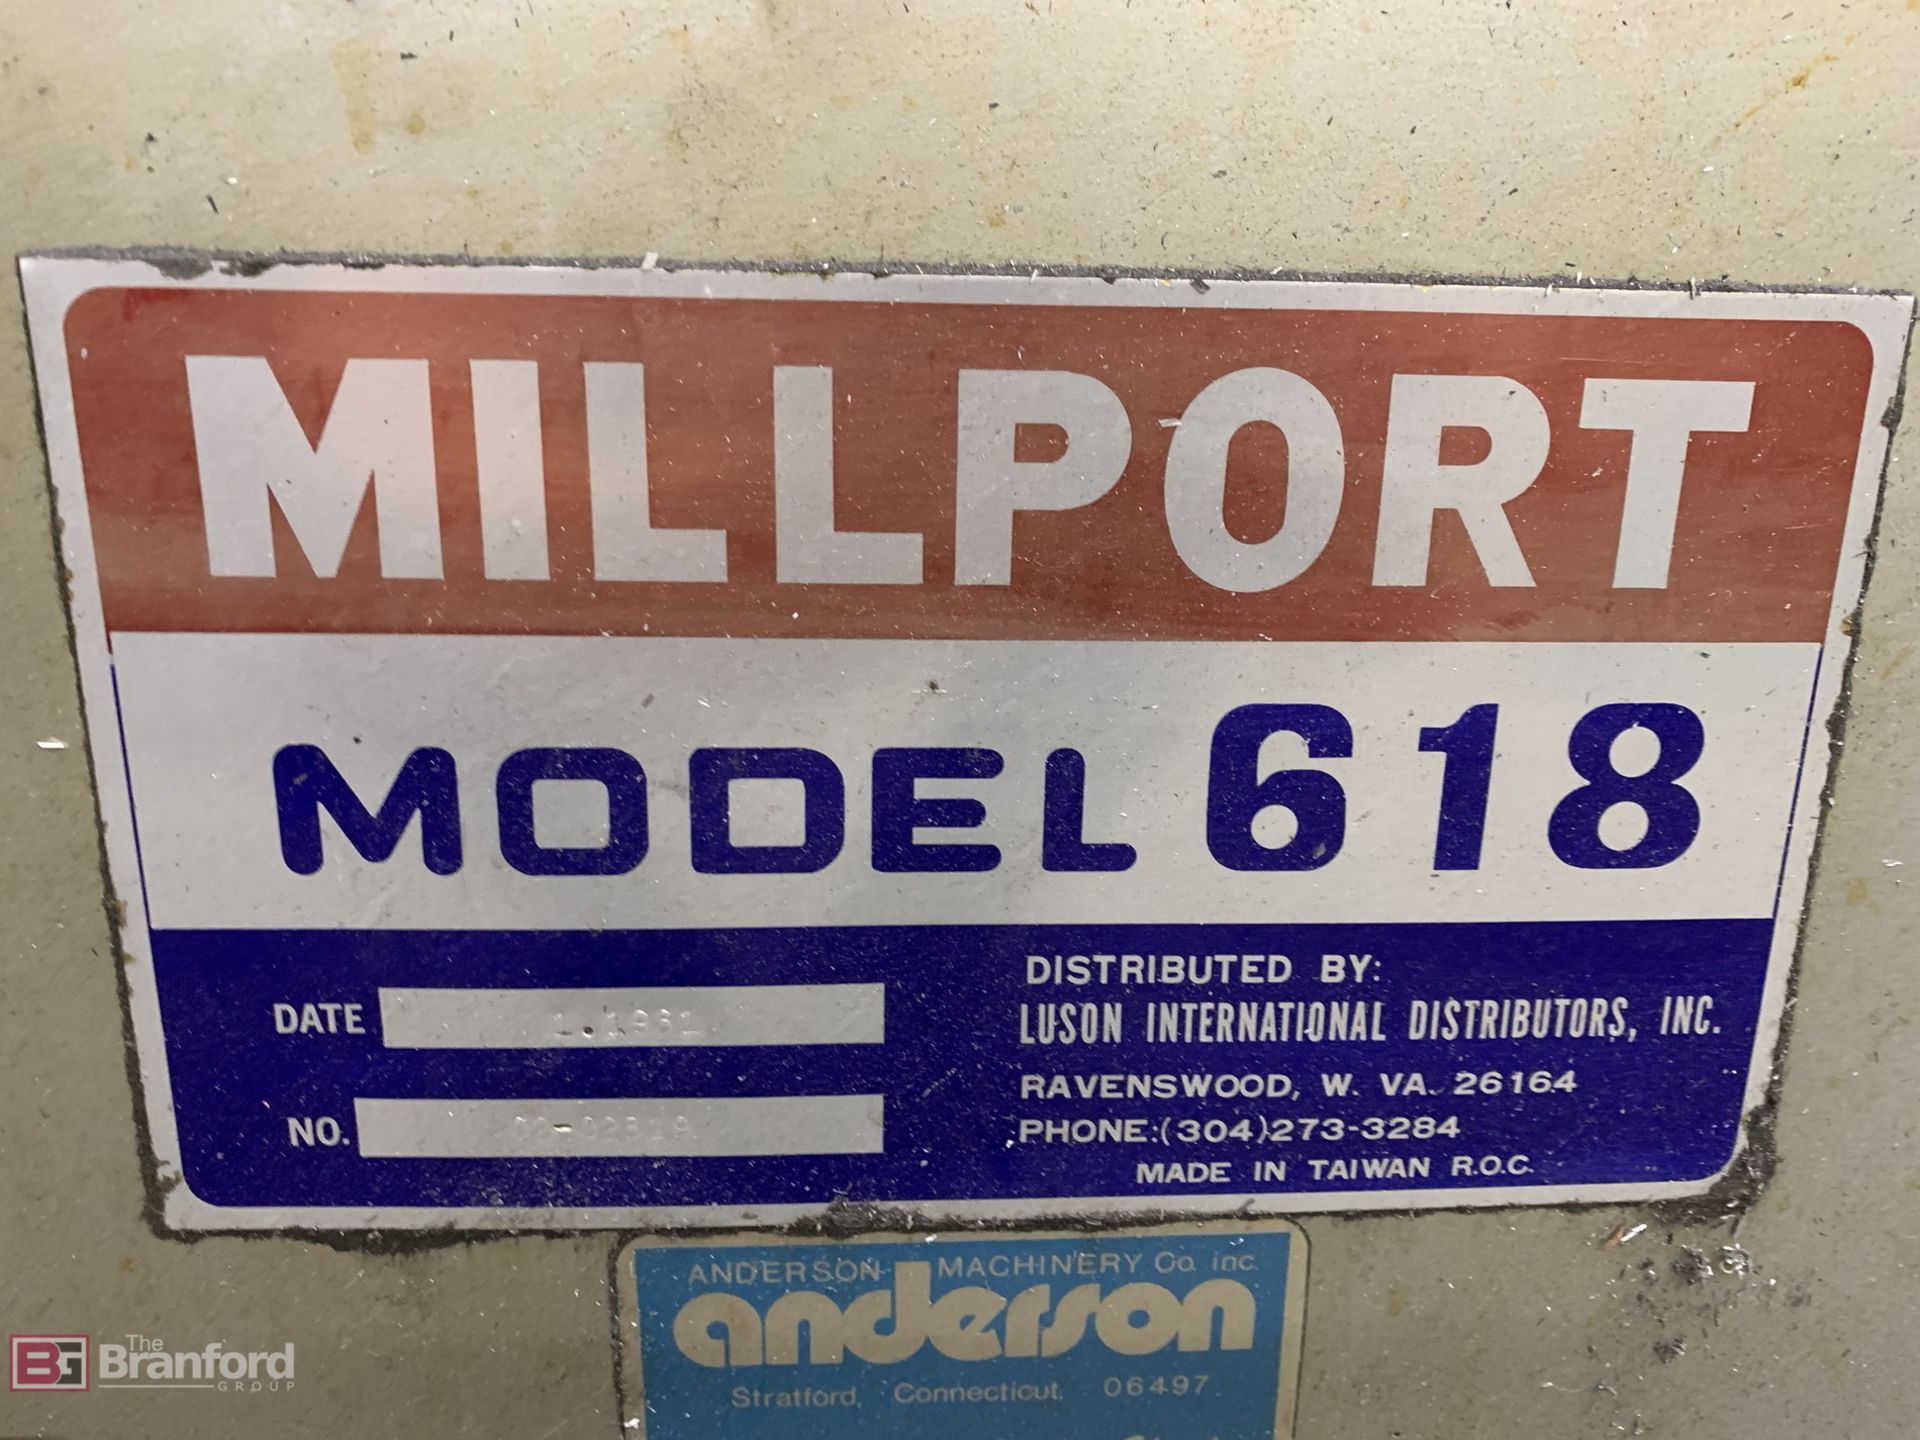 Millport Model 618 Surface Grinder - Image 6 of 6